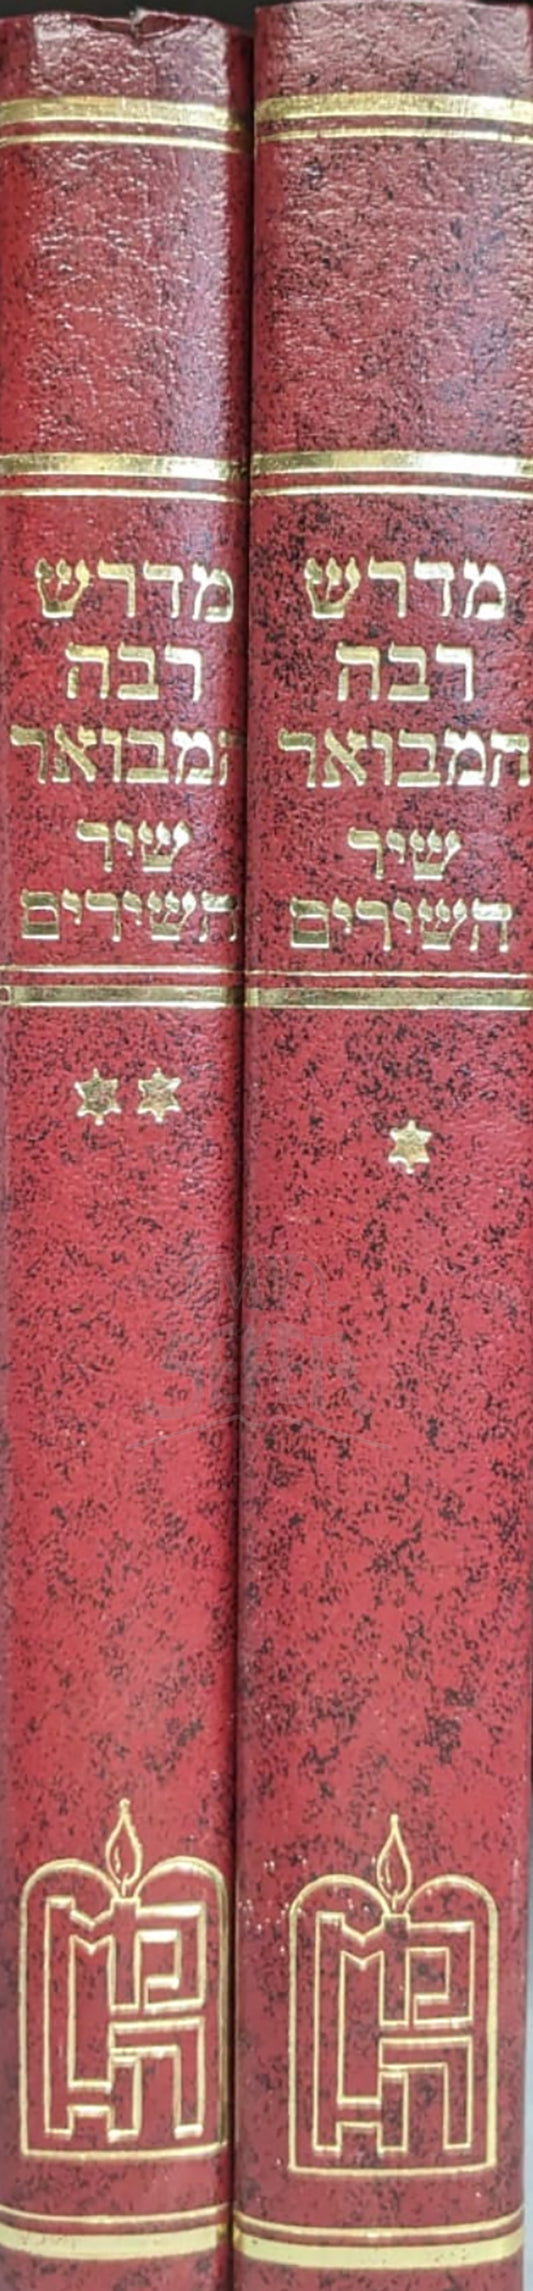 Midrash Rabbah Hamevuar - Shir HaShirim 2 Volume Set/ מדרש רבה המבואר  -שיר השירים